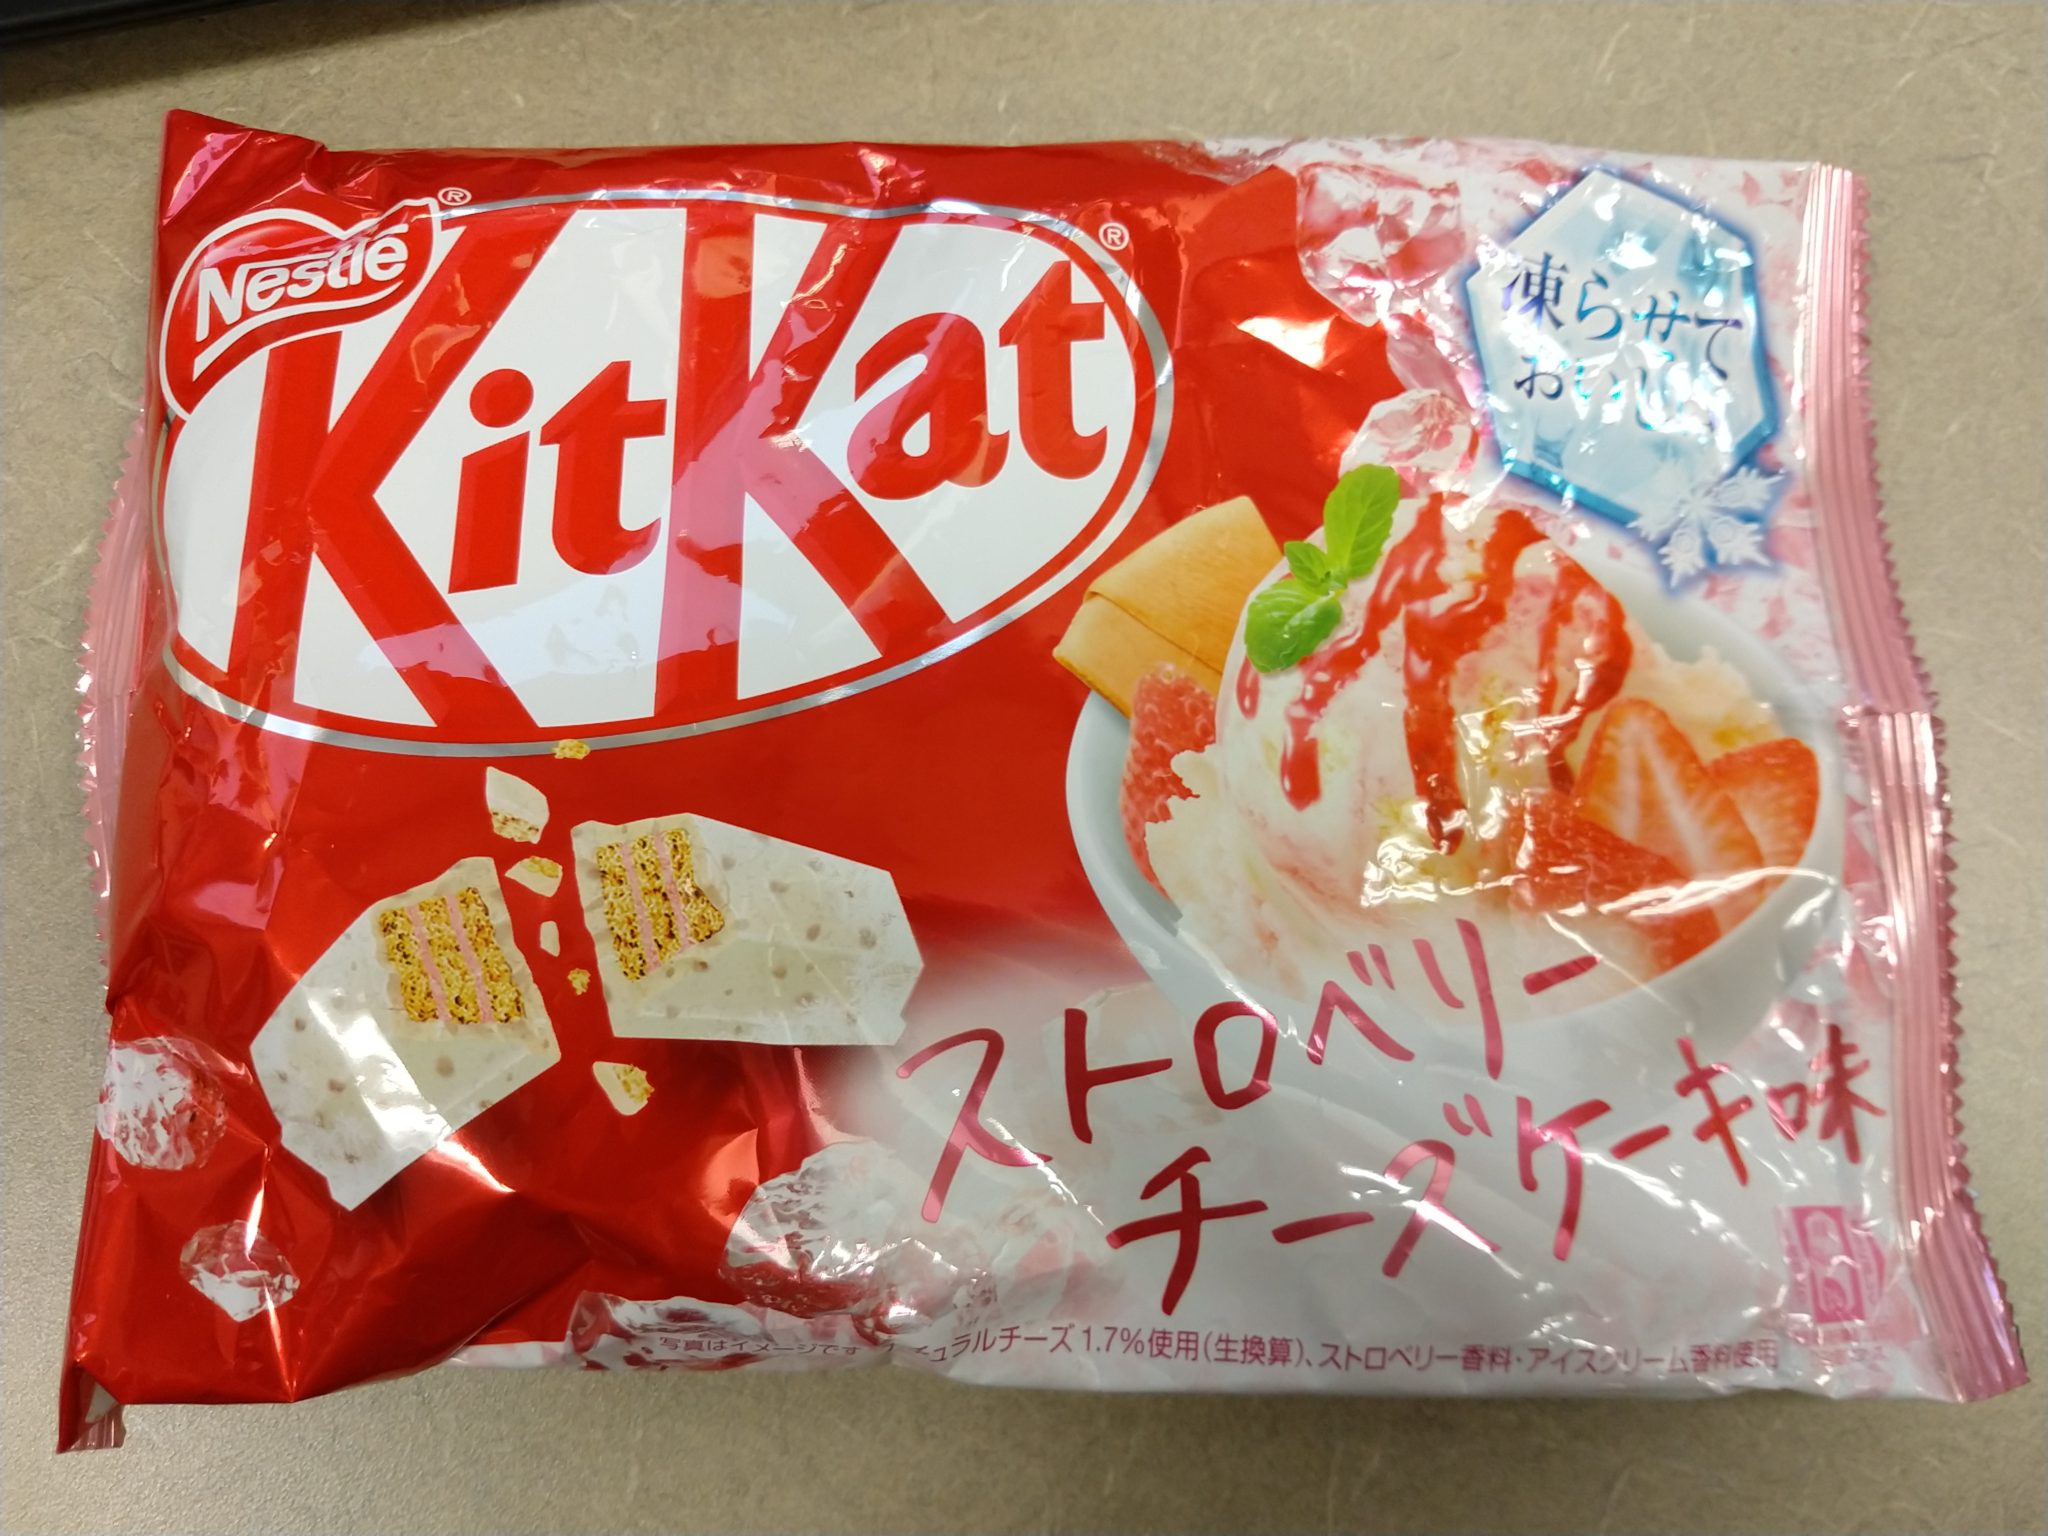 Kit Kat – Strawberry Cheesecake Ice Cream